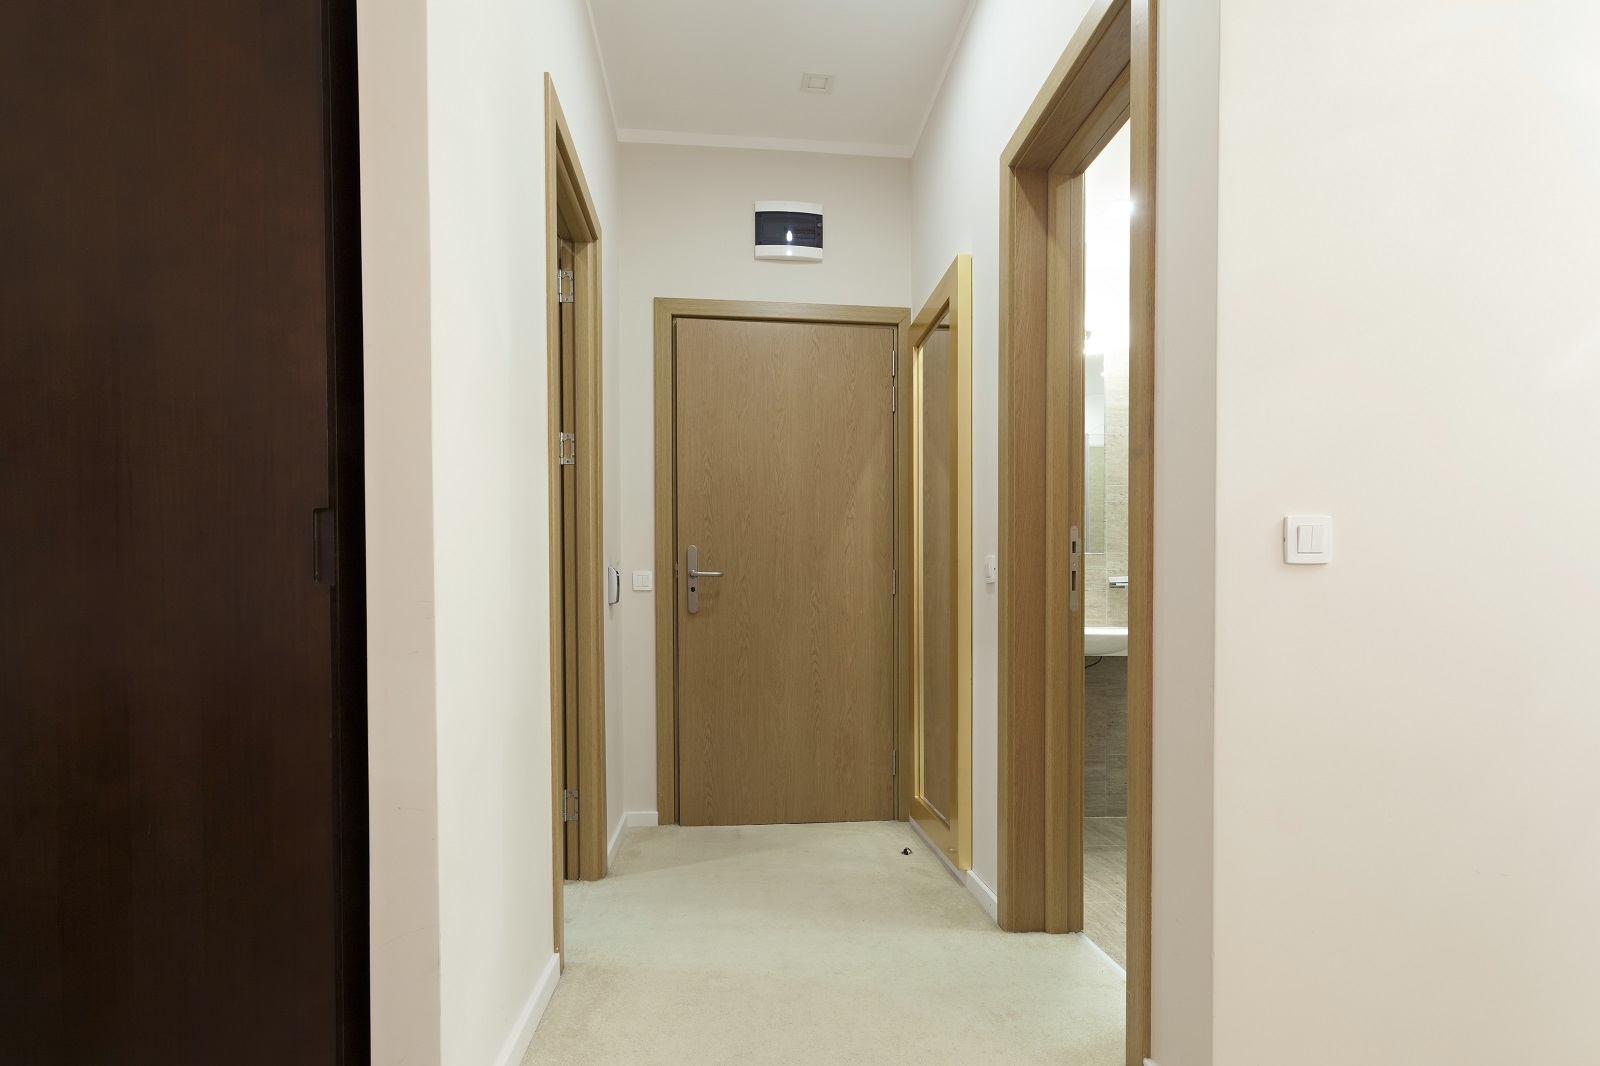 走廊寬度狹窄且同時有許多扇門，將導致家人氣量無形中變小易發生爭執。